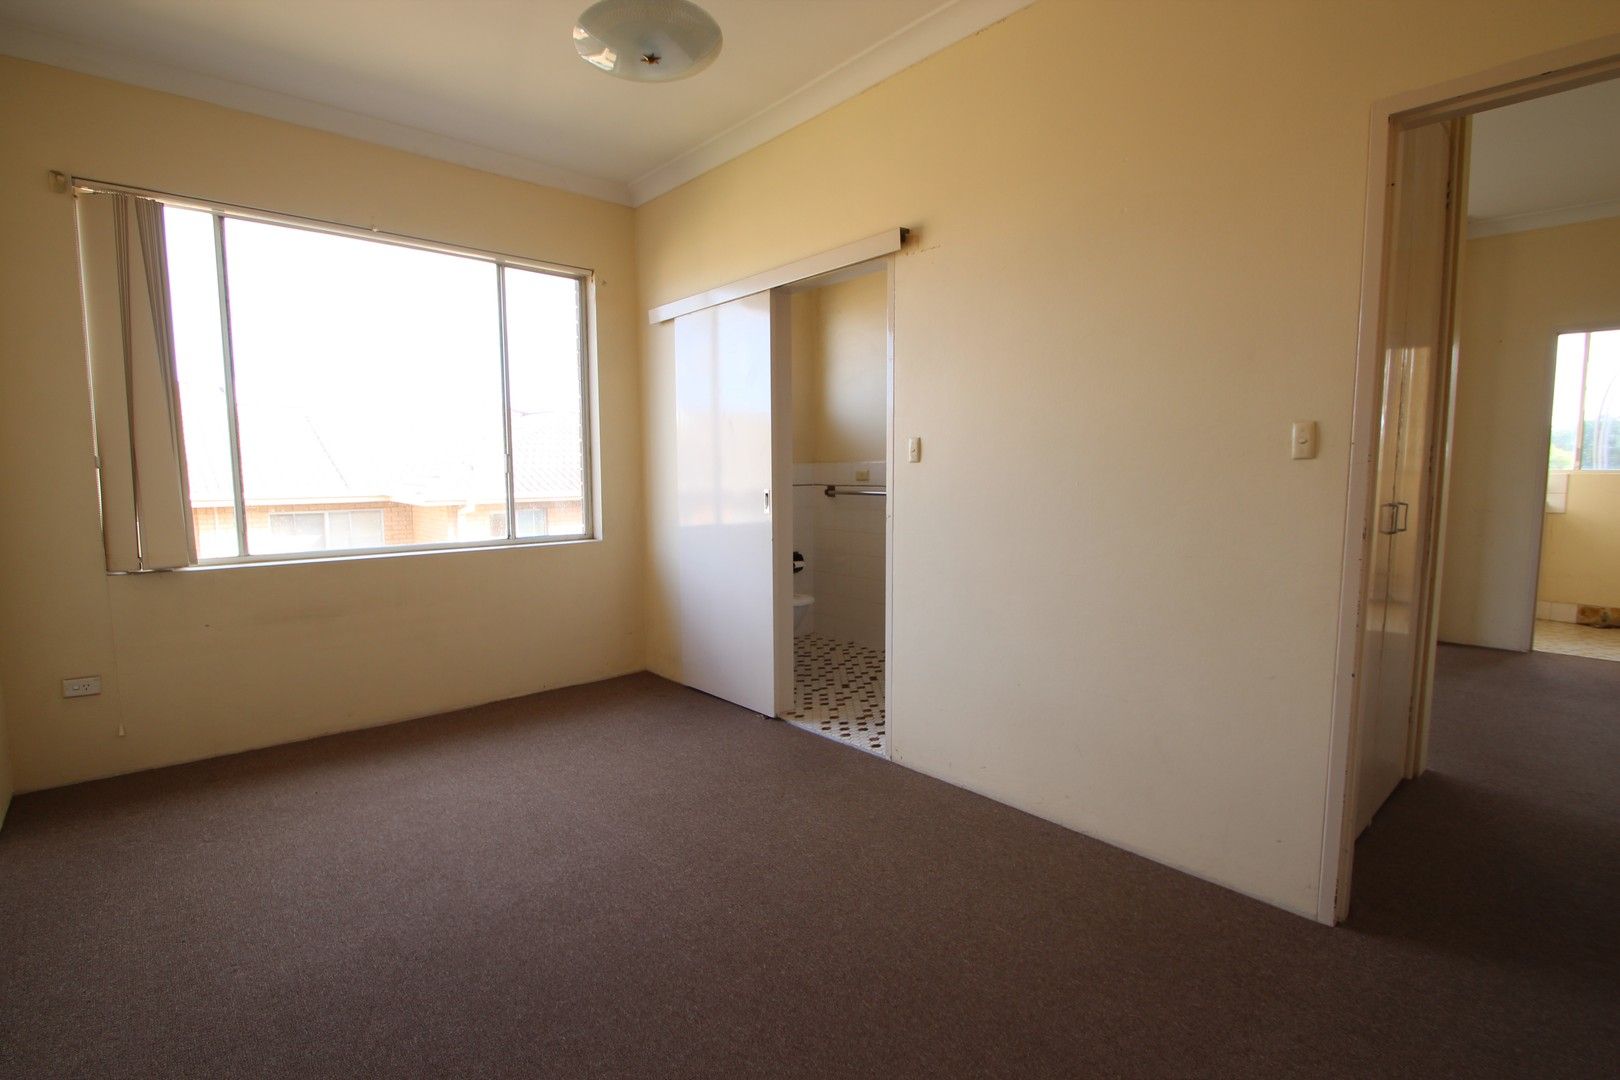 1 bedrooms Apartment / Unit / Flat in 14/39 Queen Victoria Street BEXLEY NSW, 2207